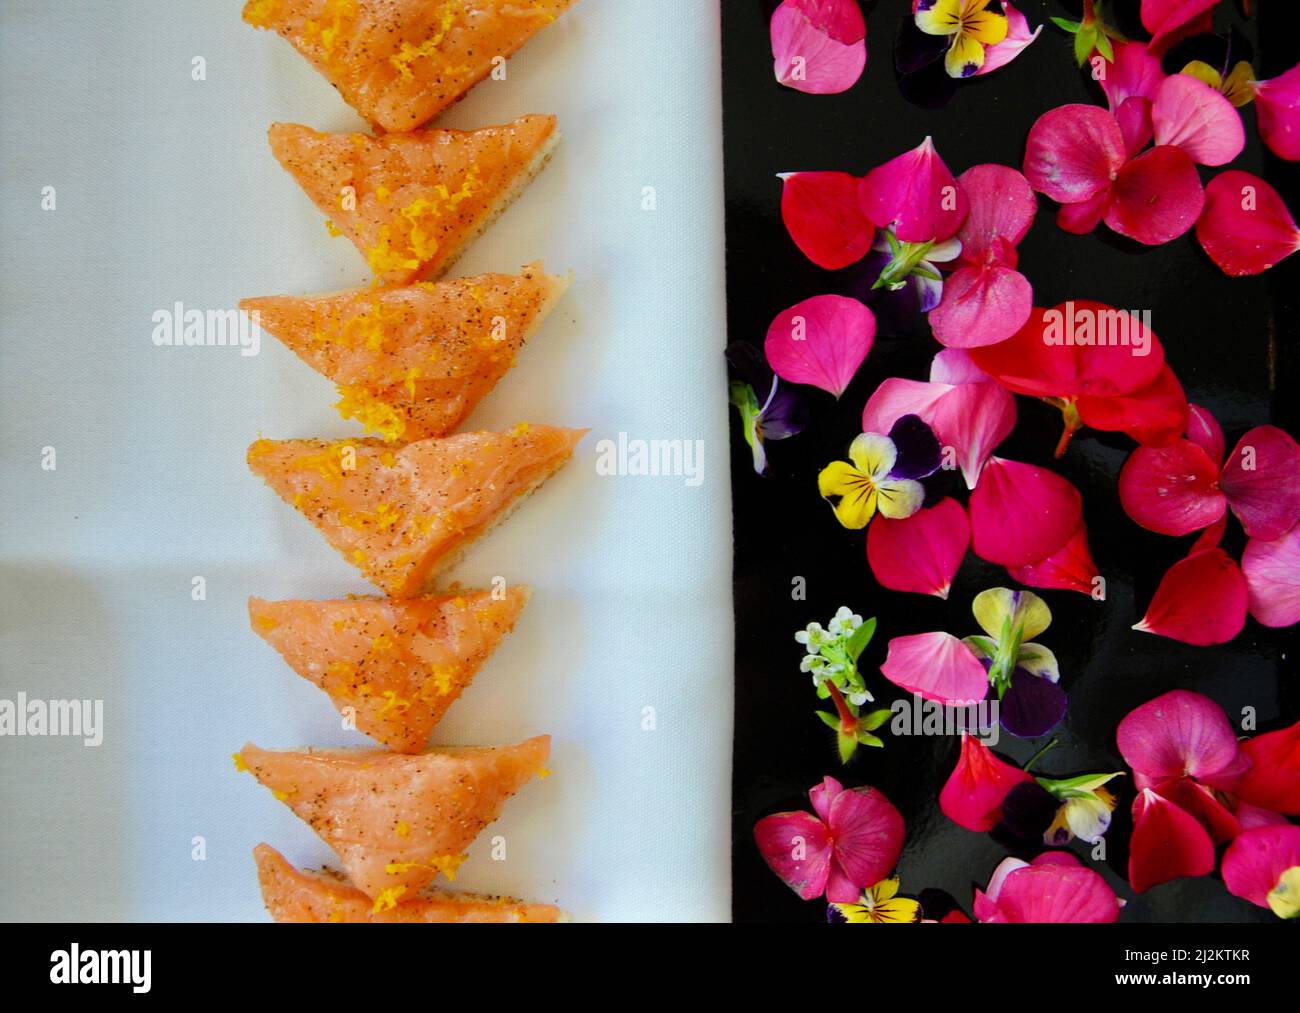 Canapés au saumon fumé sur plateau décoré de fleurs comestibles Banque D'Images